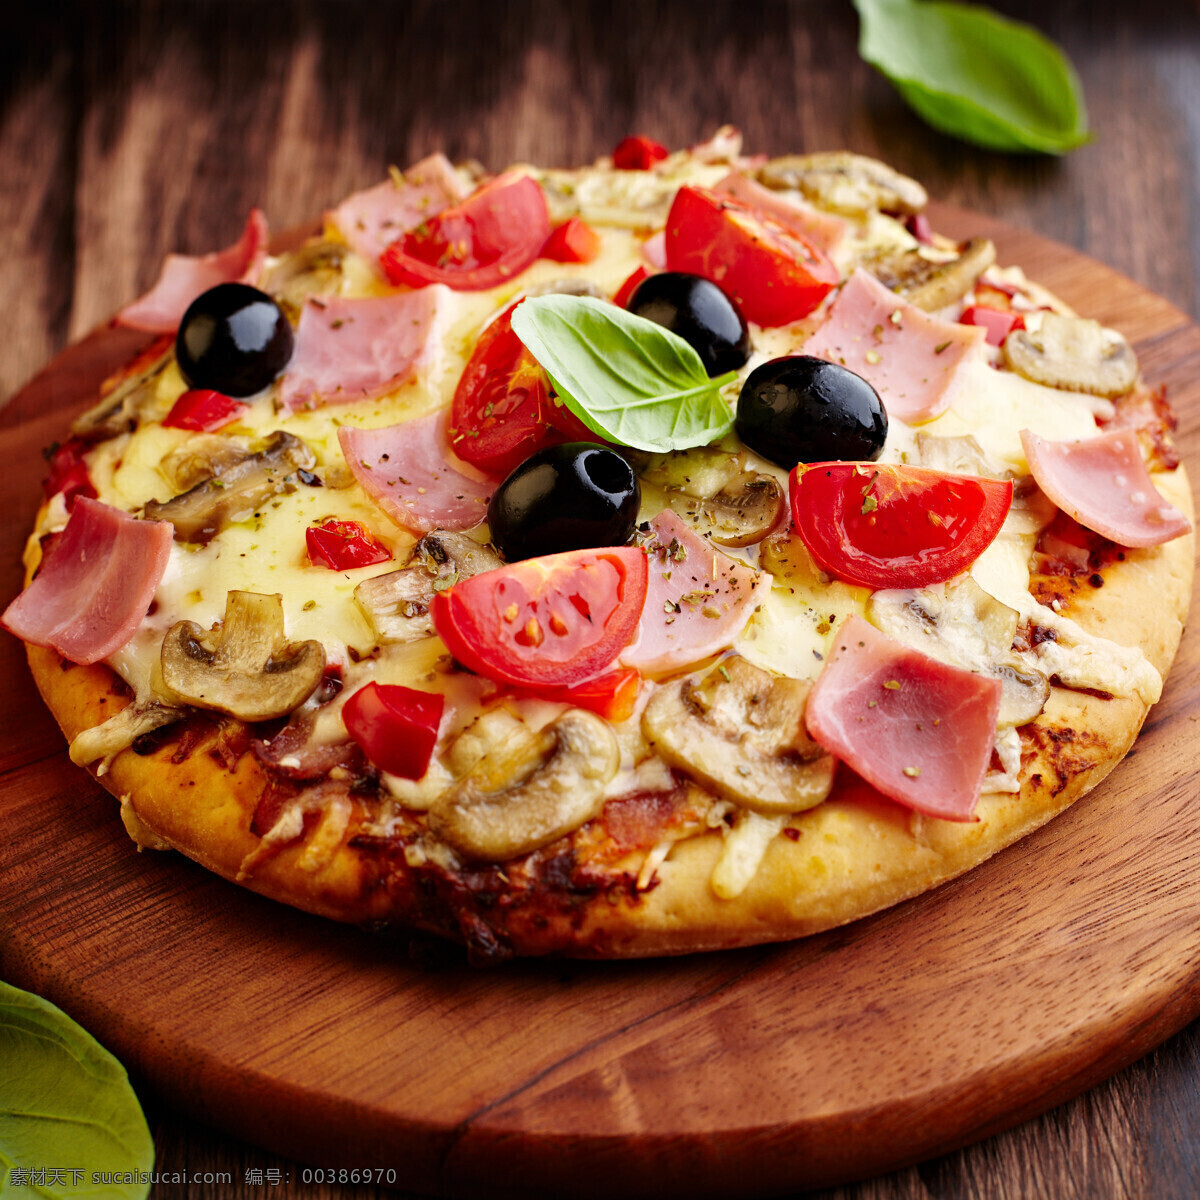 菜板上的披萨 披萨 番茄 西红柿 国外美食 美味 意大利美食 西餐美食 餐饮美食 黑色